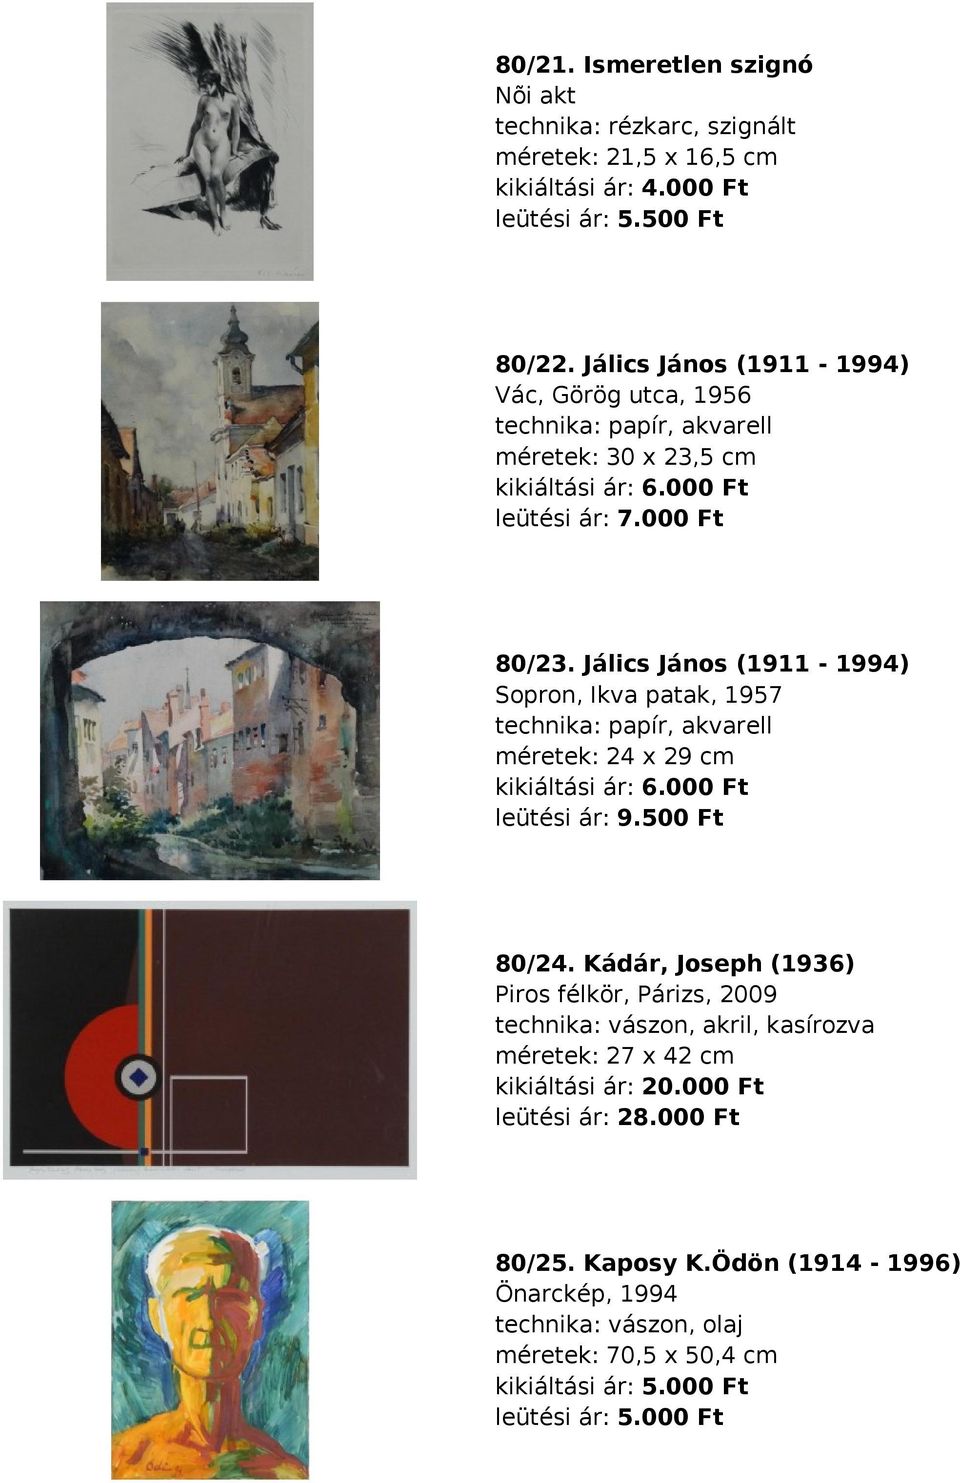 Jálics János (1911-1994) Sopron, Ikva patak, 1957 technika: papír, akvarell méretek: 24 x 29 cm kikiáltási ár: 6.000 Ft leütési ár: 9.500 Ft 80/24.